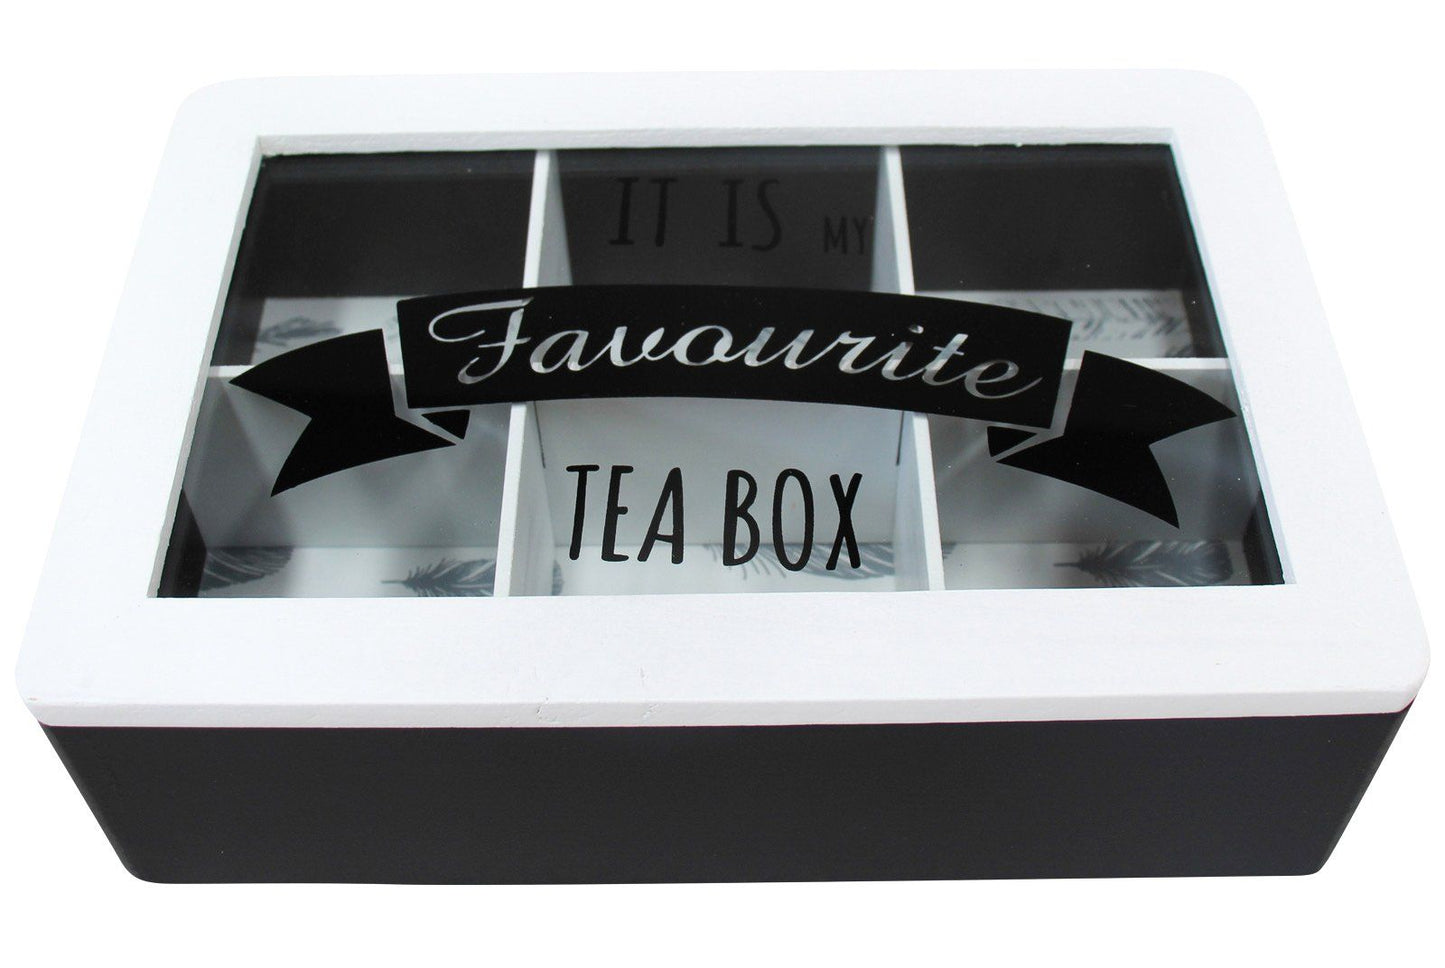 Tea Box Tea Favourites Vintage Black